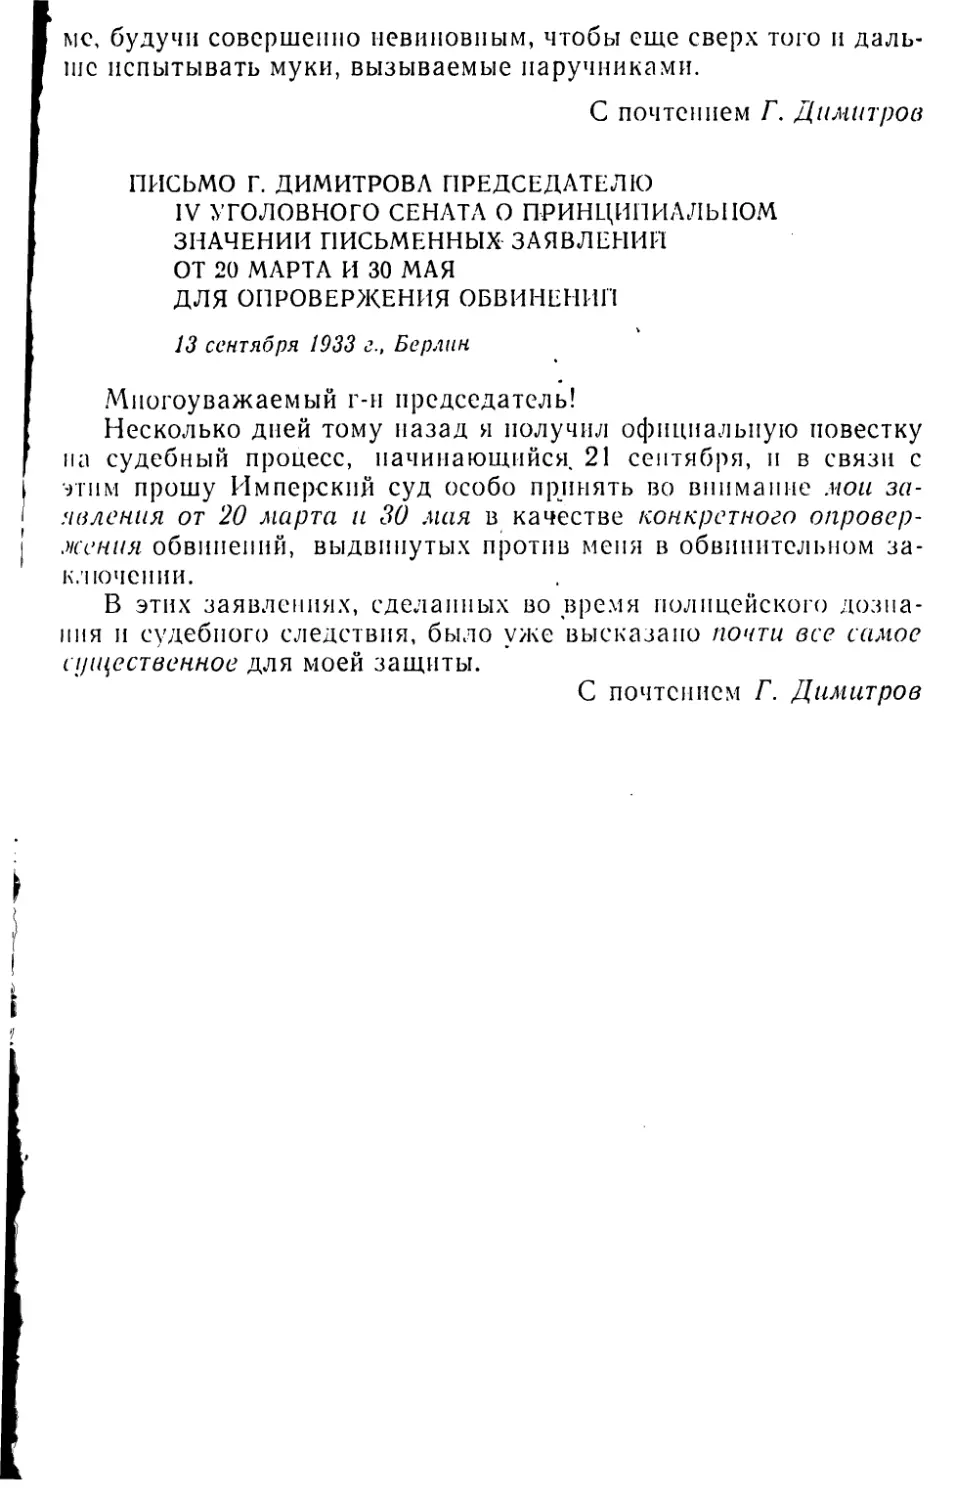 Письмо Г. Димитрова председателю IV -уголовного сената о принципиальном значении письменных заявлений «От 20 марта и 30 мая для опровержения обвинений. 13 сентября 1933 г